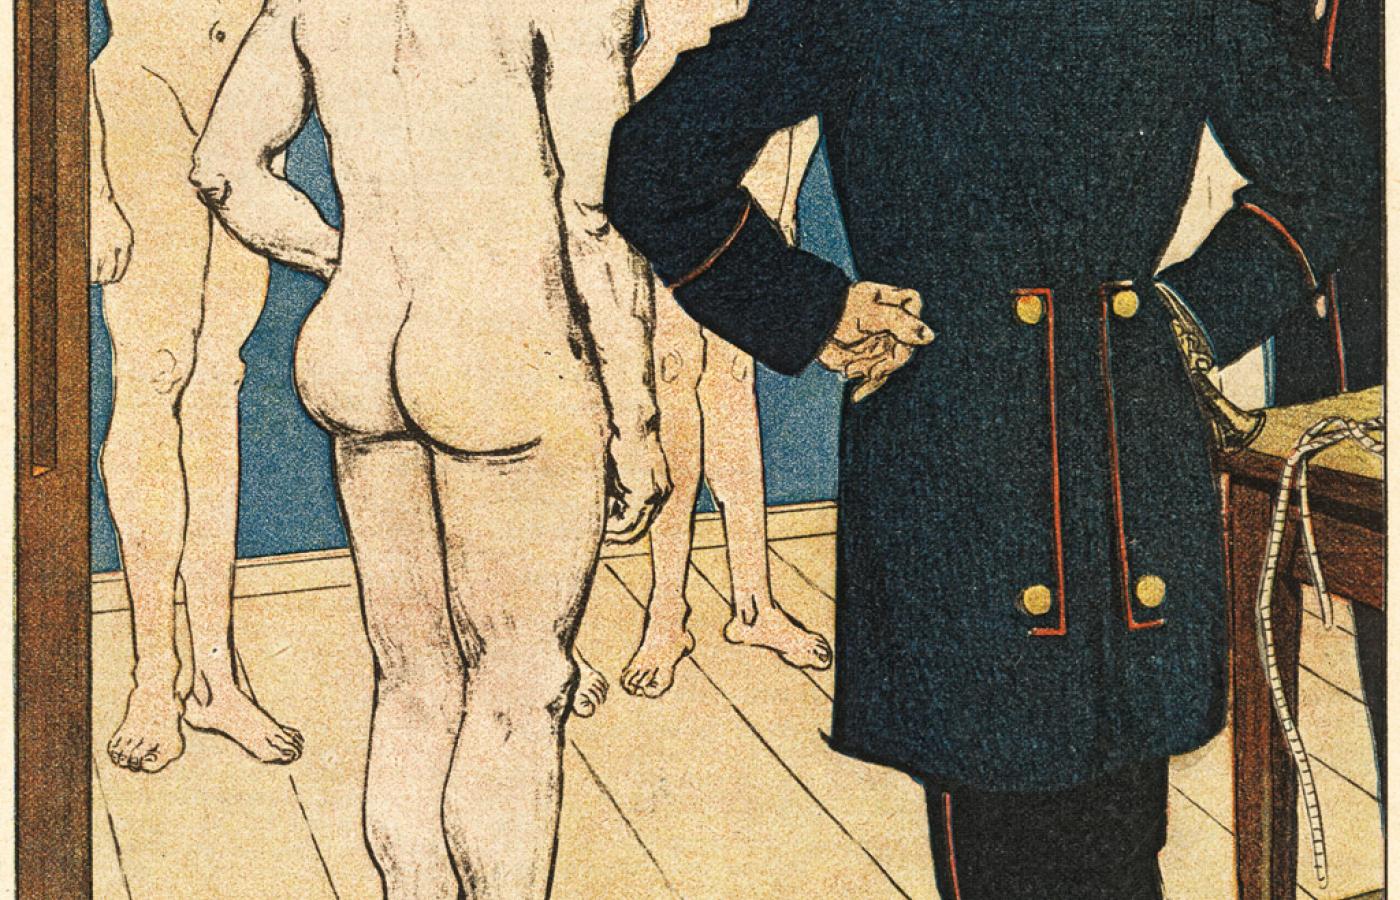 Niemiecki rysunek satyryczny z 1907 r. kpiący z homoseksualizmu w wojsku pruskim.